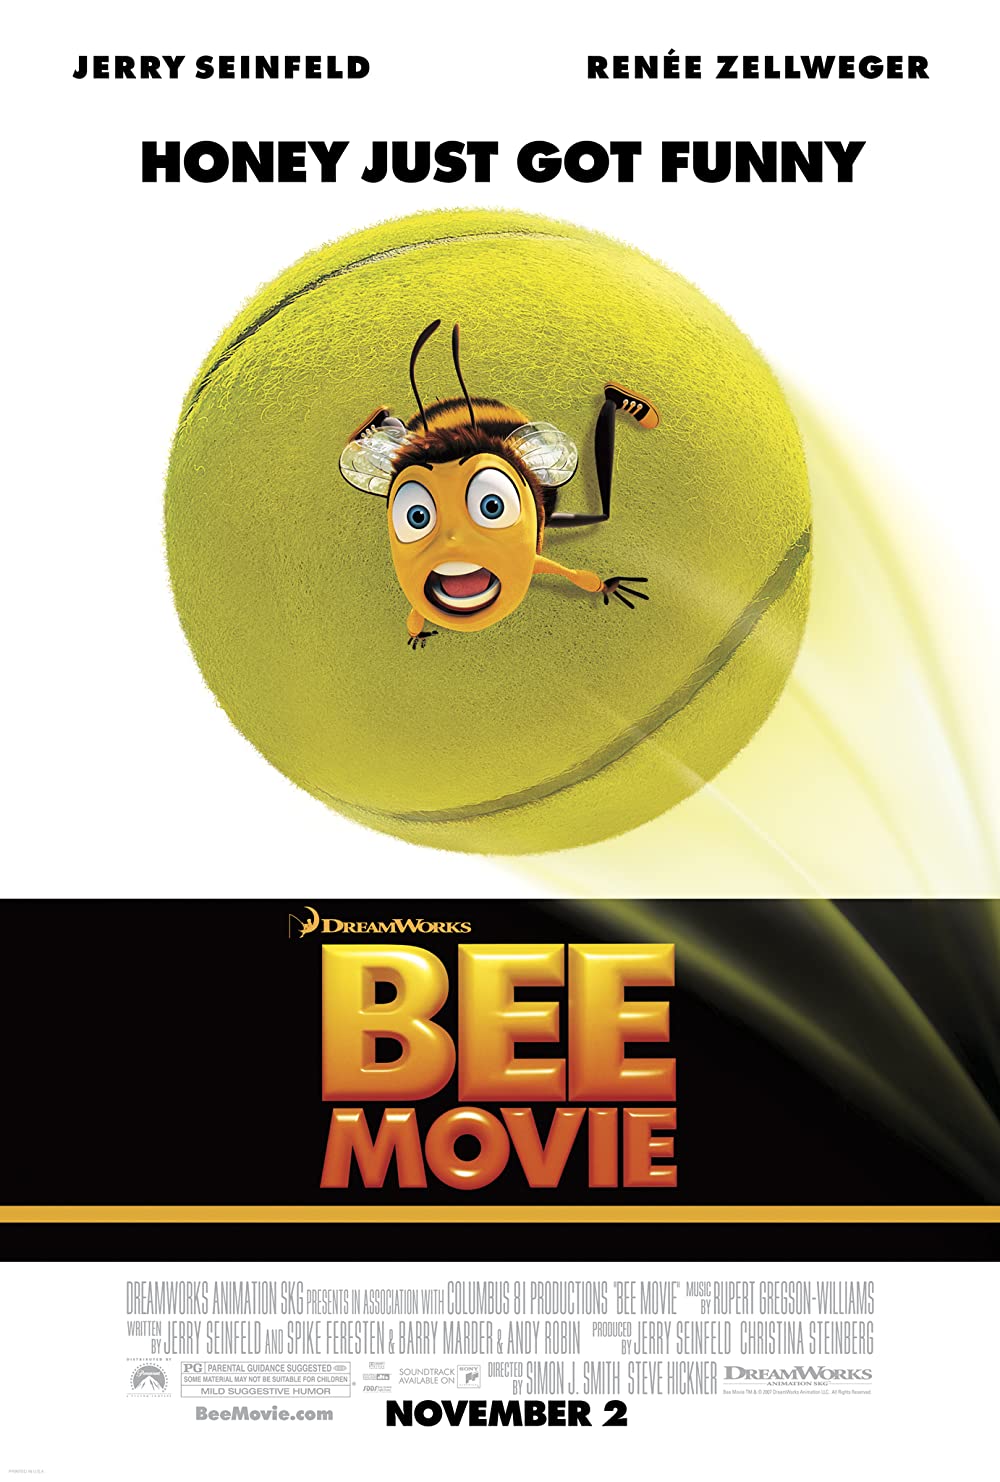 Filmbeschreibung zu Bee Movie